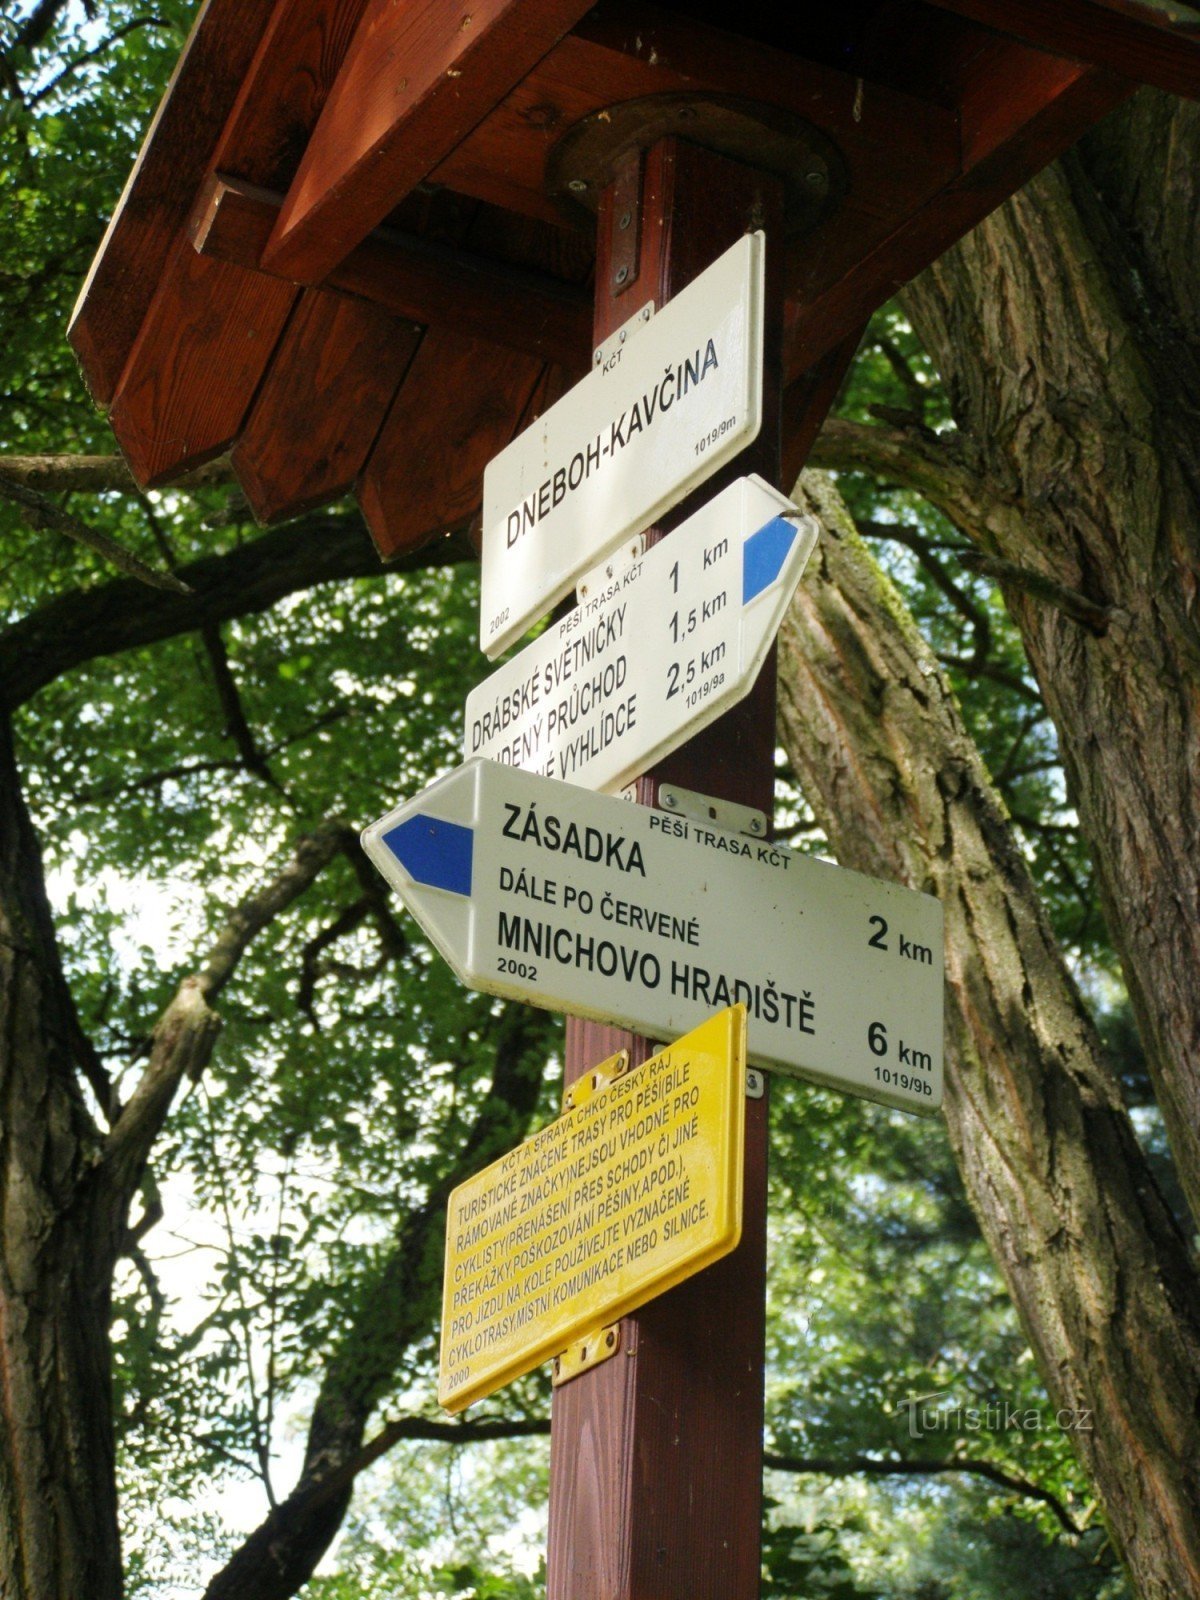 τουριστικό σταυροδρόμι Dneboh - Kavčina